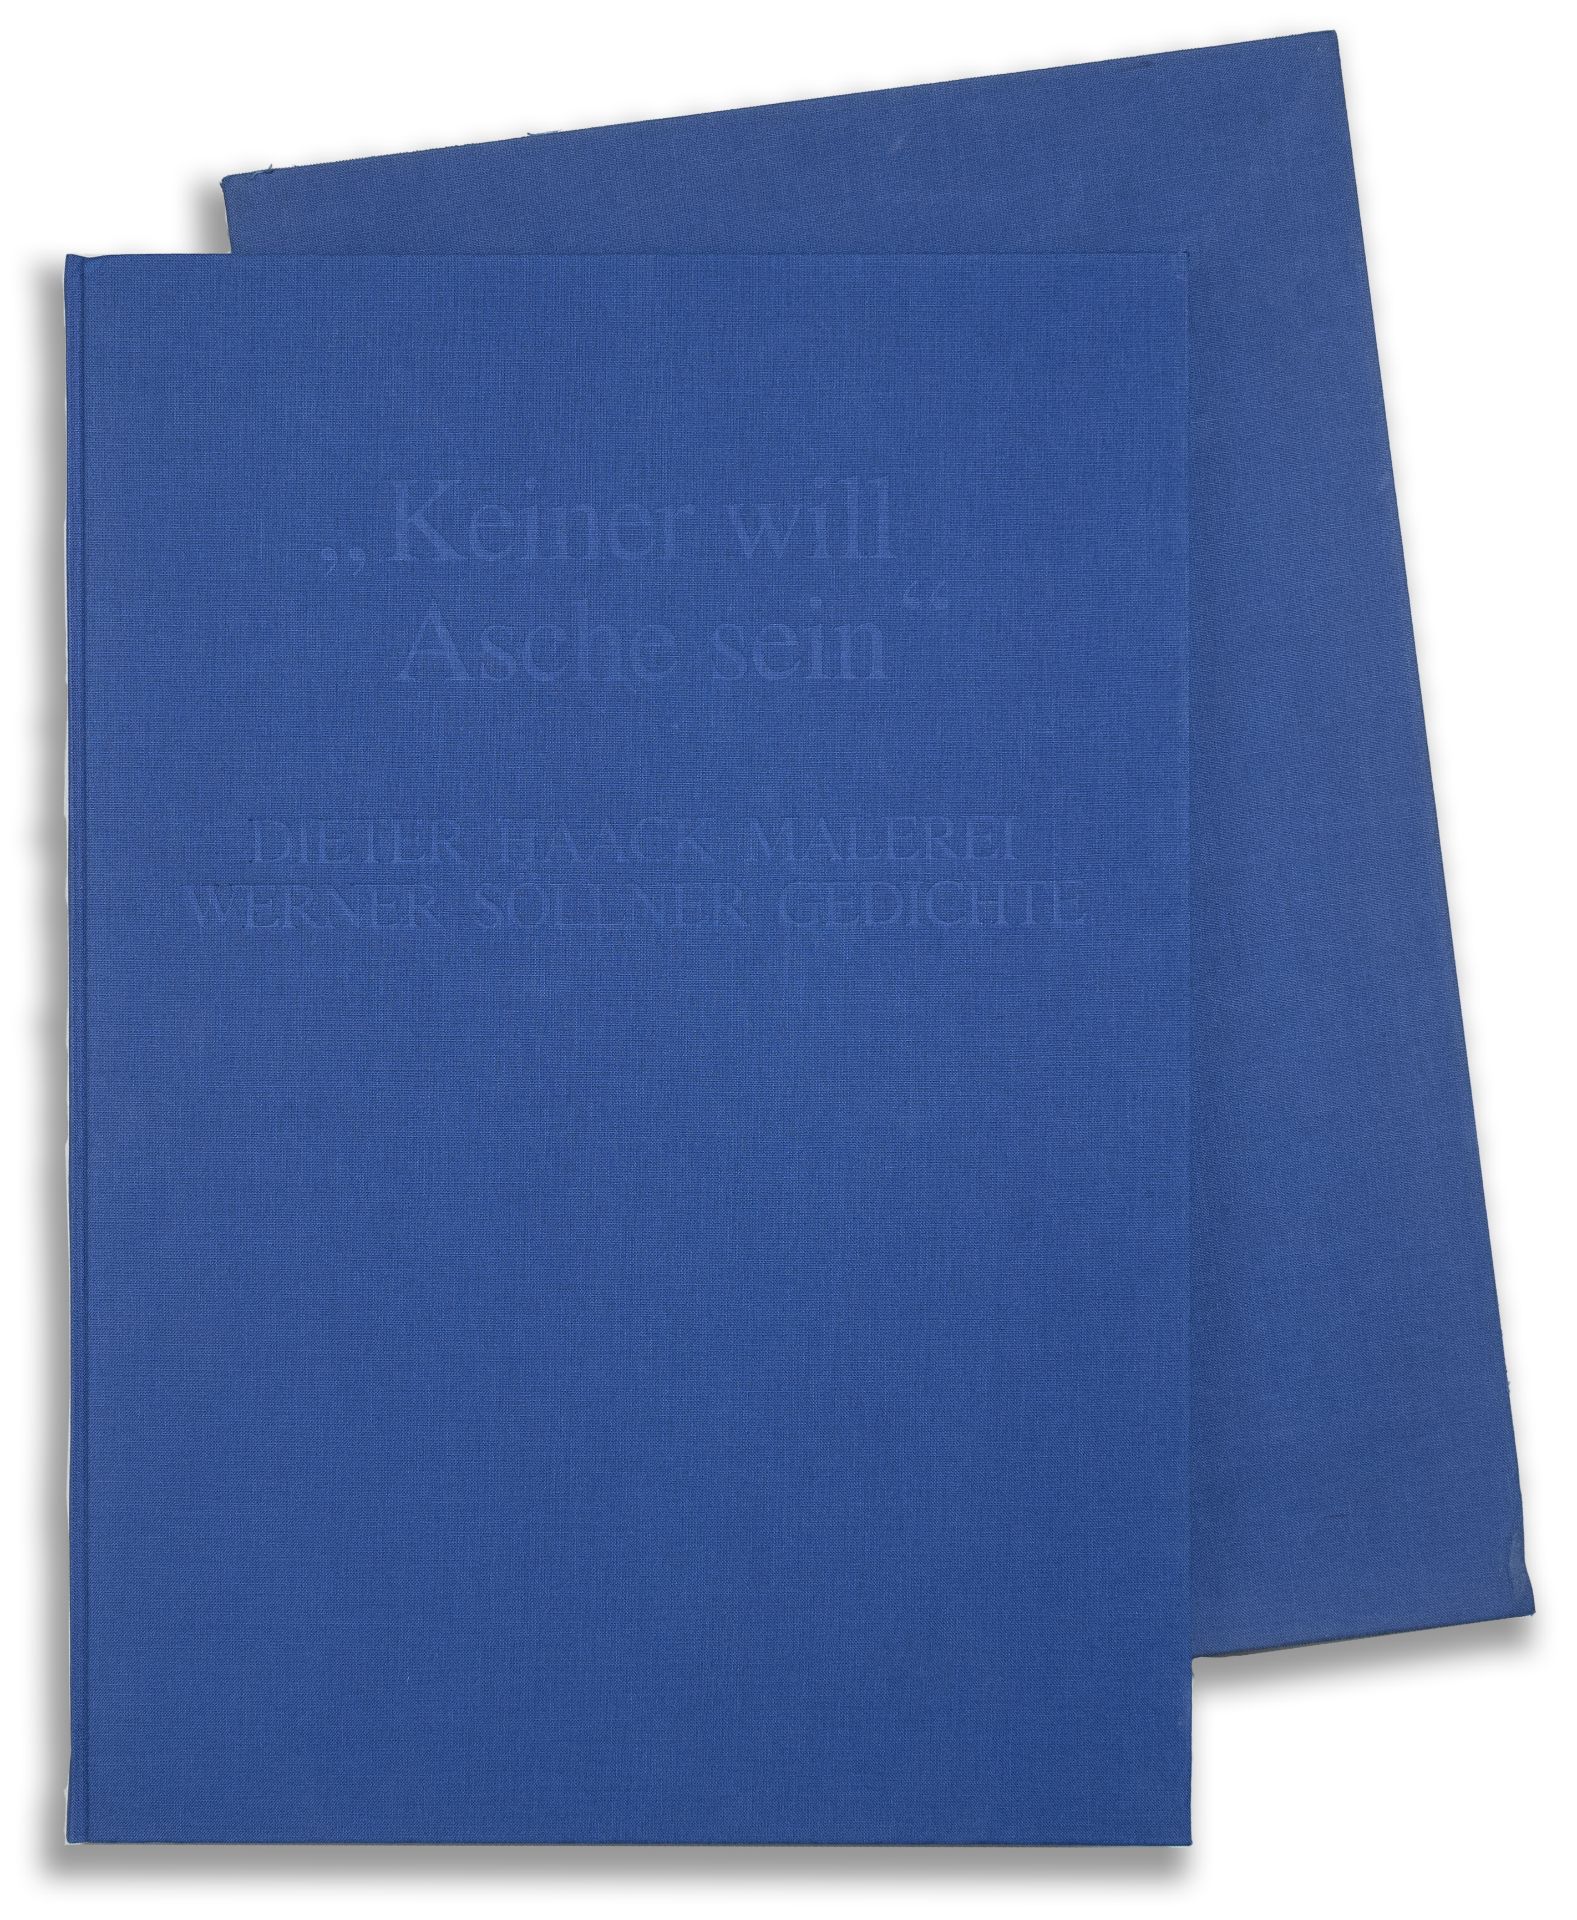 'Keiner will Asche sein', Dieter Haack und Werner Söllner, 1994 - Image 3 of 5